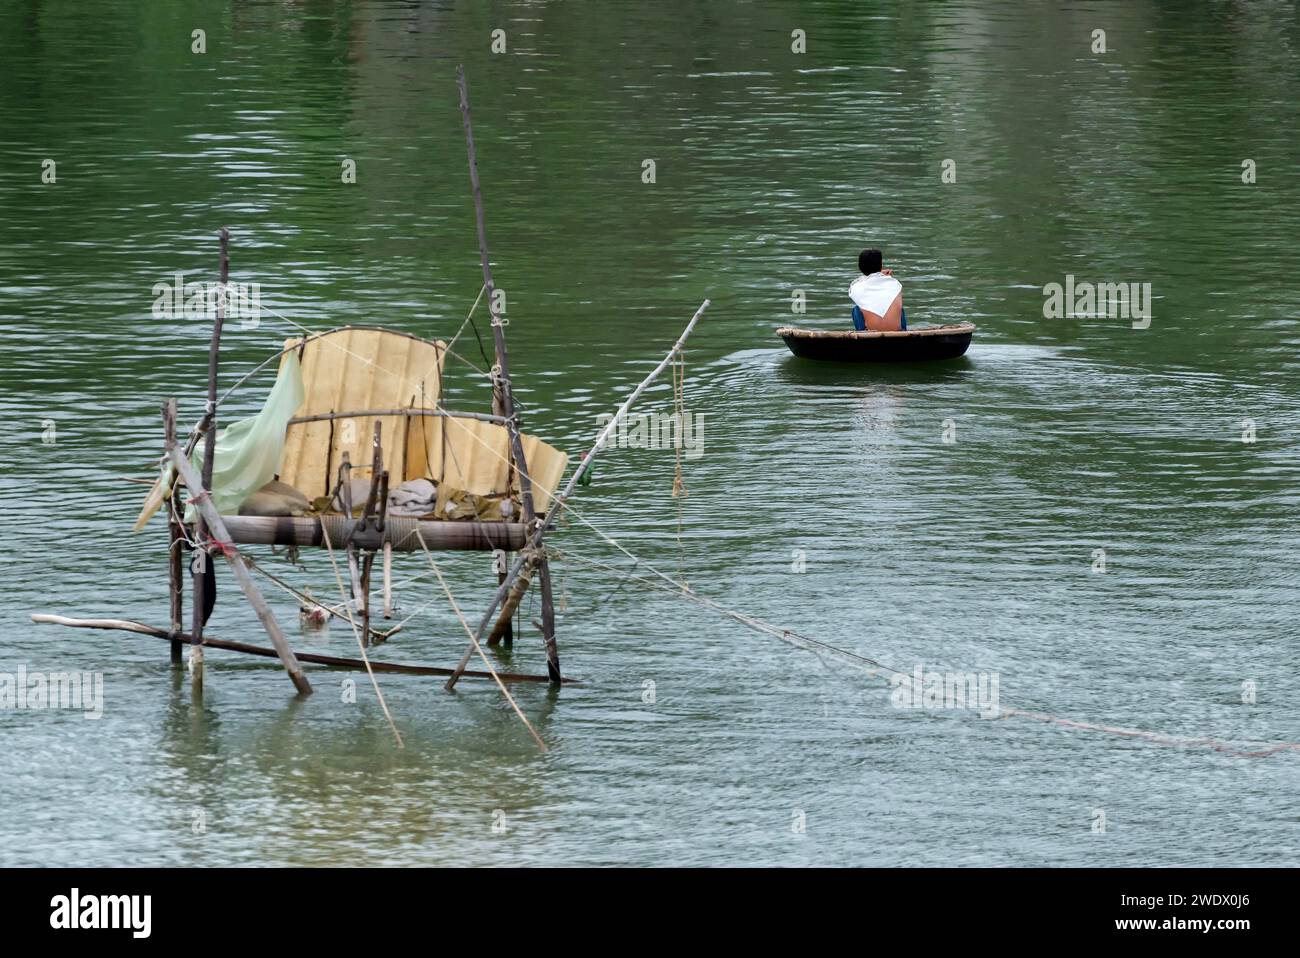 Pescador en bote de cesta o thung chai - barco redondeado hecho de bambú, con cabaña de pesca borrosa a la izquierda en Vietnam Foto de stock